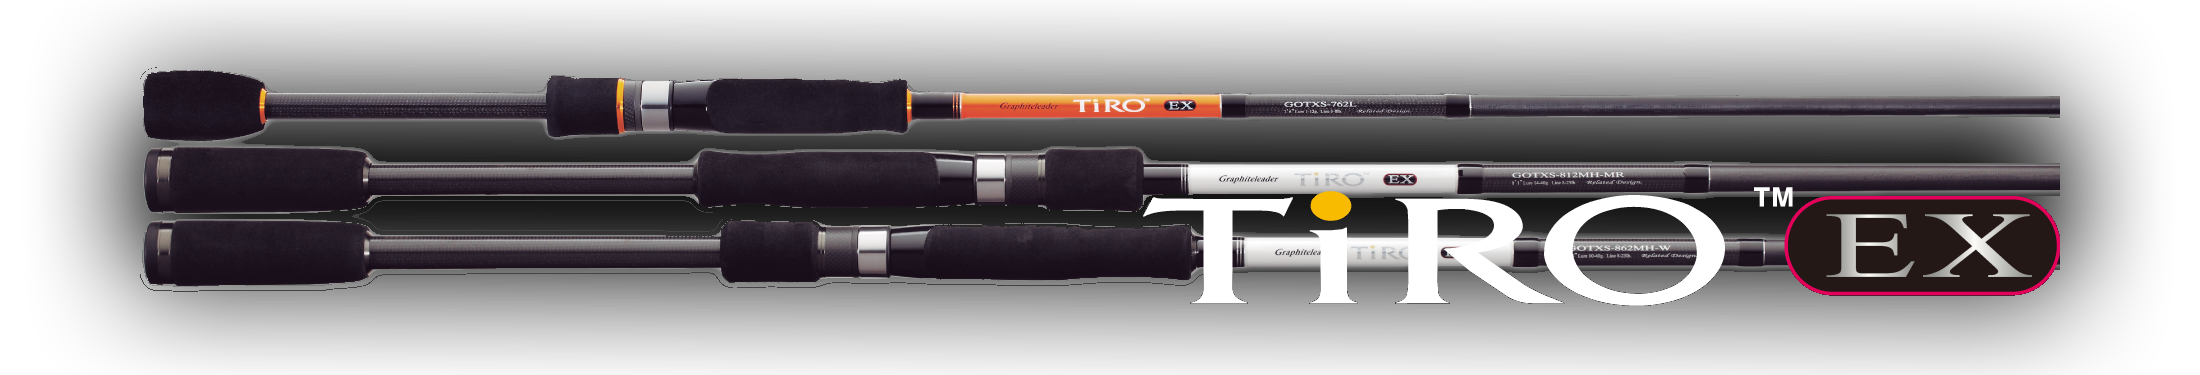 Graphiteleader tiro prototype — топовое удилище для джига и не только